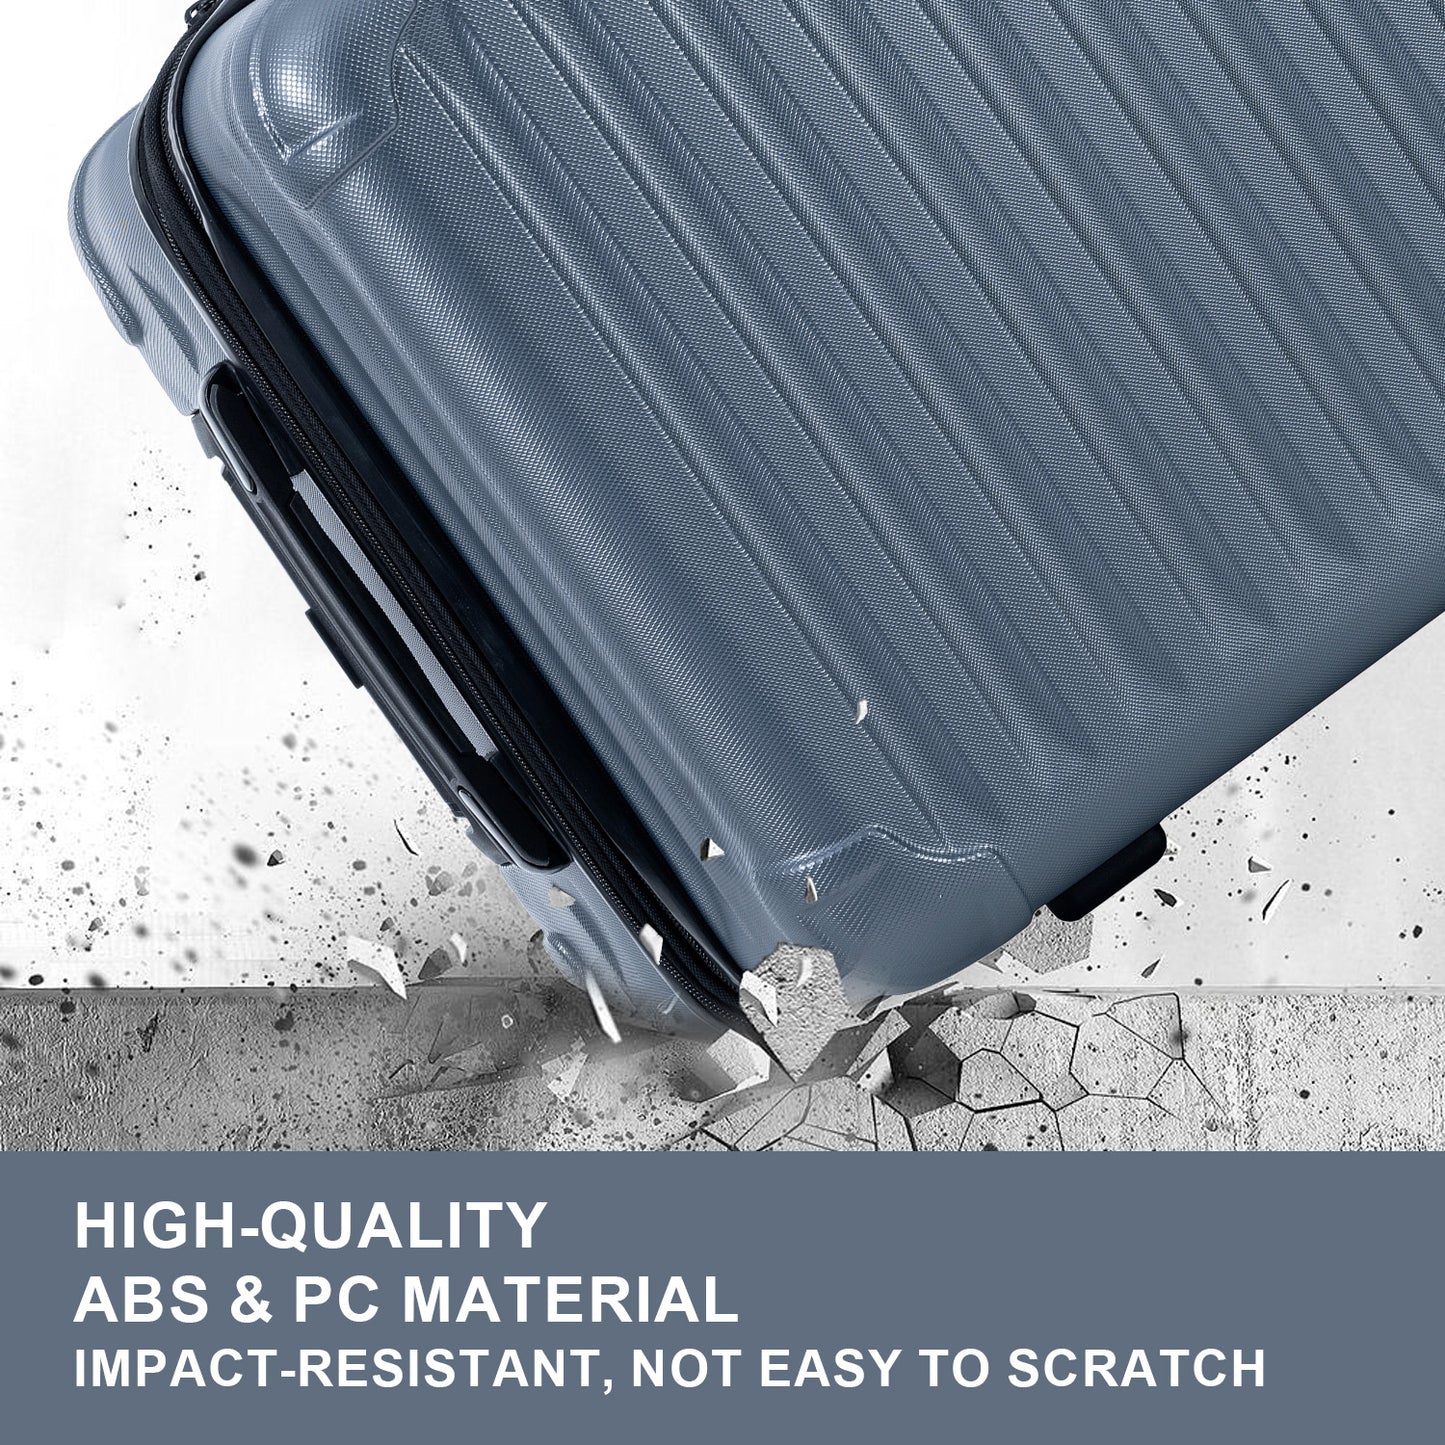 Ensembles de bagages extensible ABS + PC, 3 pièces avec roues pivotantes, serrure TSA légère (20/24/28), gris acier